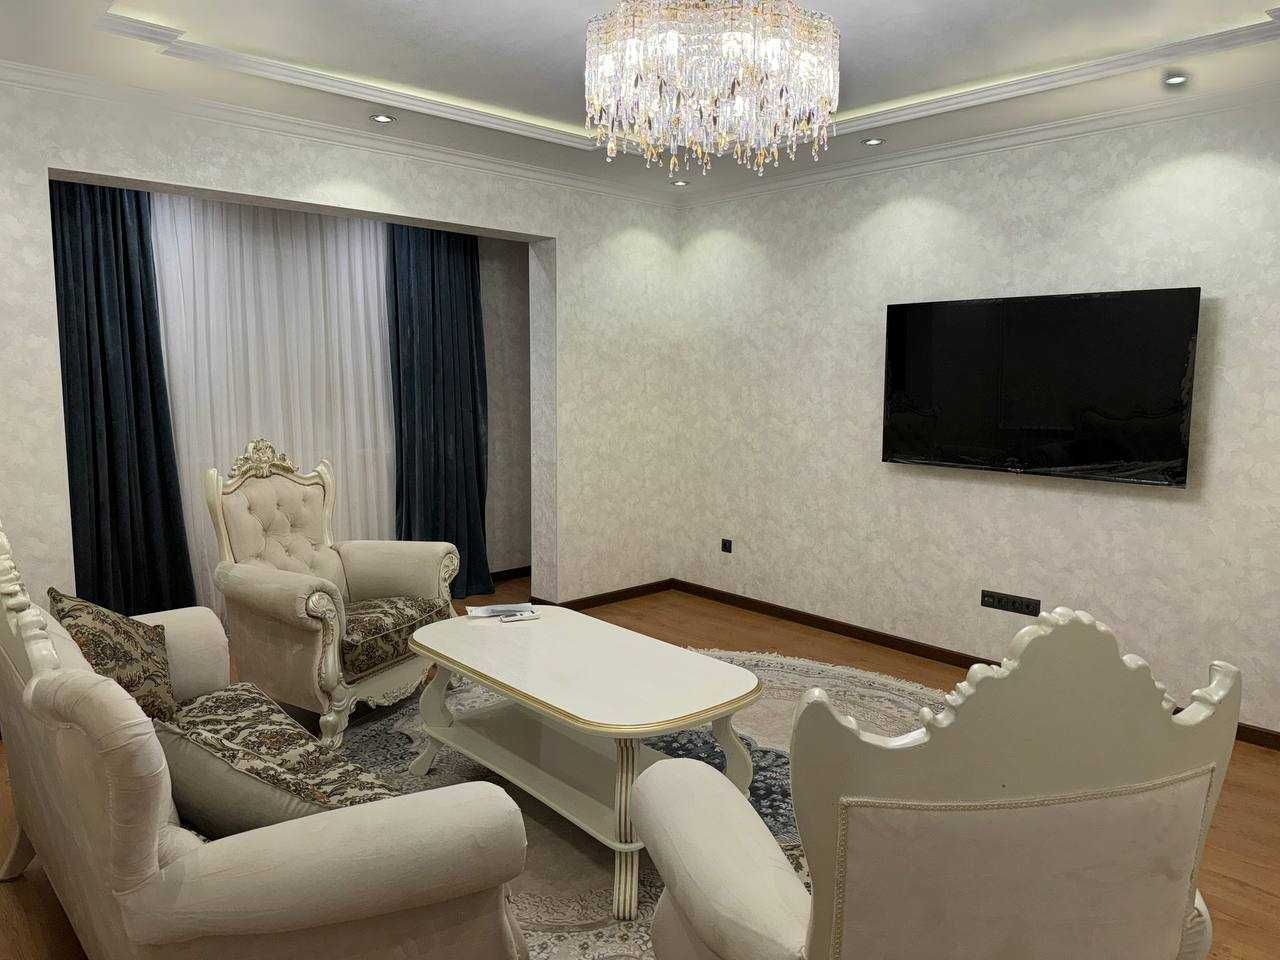 Продается квартира на Новомосковской 2/4/9 с евроремонтом 60 м²!